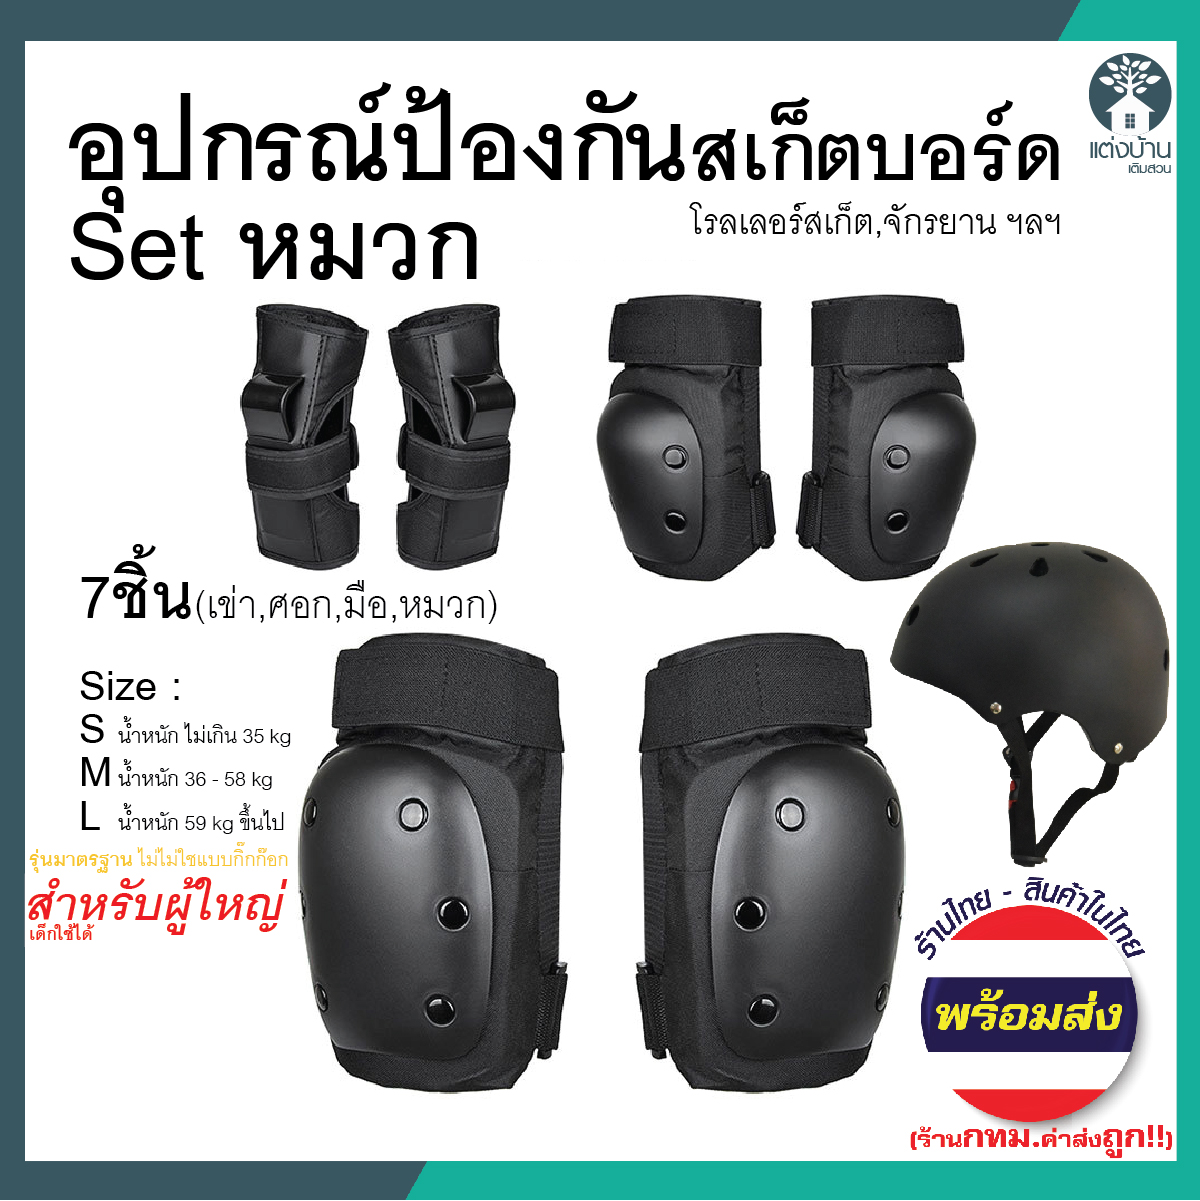 อุปกรณ์ป้องกันสเก็ตบอร์ด6ชิ้น หมวก อุปกรณ์ Safety อุปกรณ์ป้องกันล้ม สนับเข่า สนับข้อศอก (มีของพร้อมส่ง สินค้าในไทย)